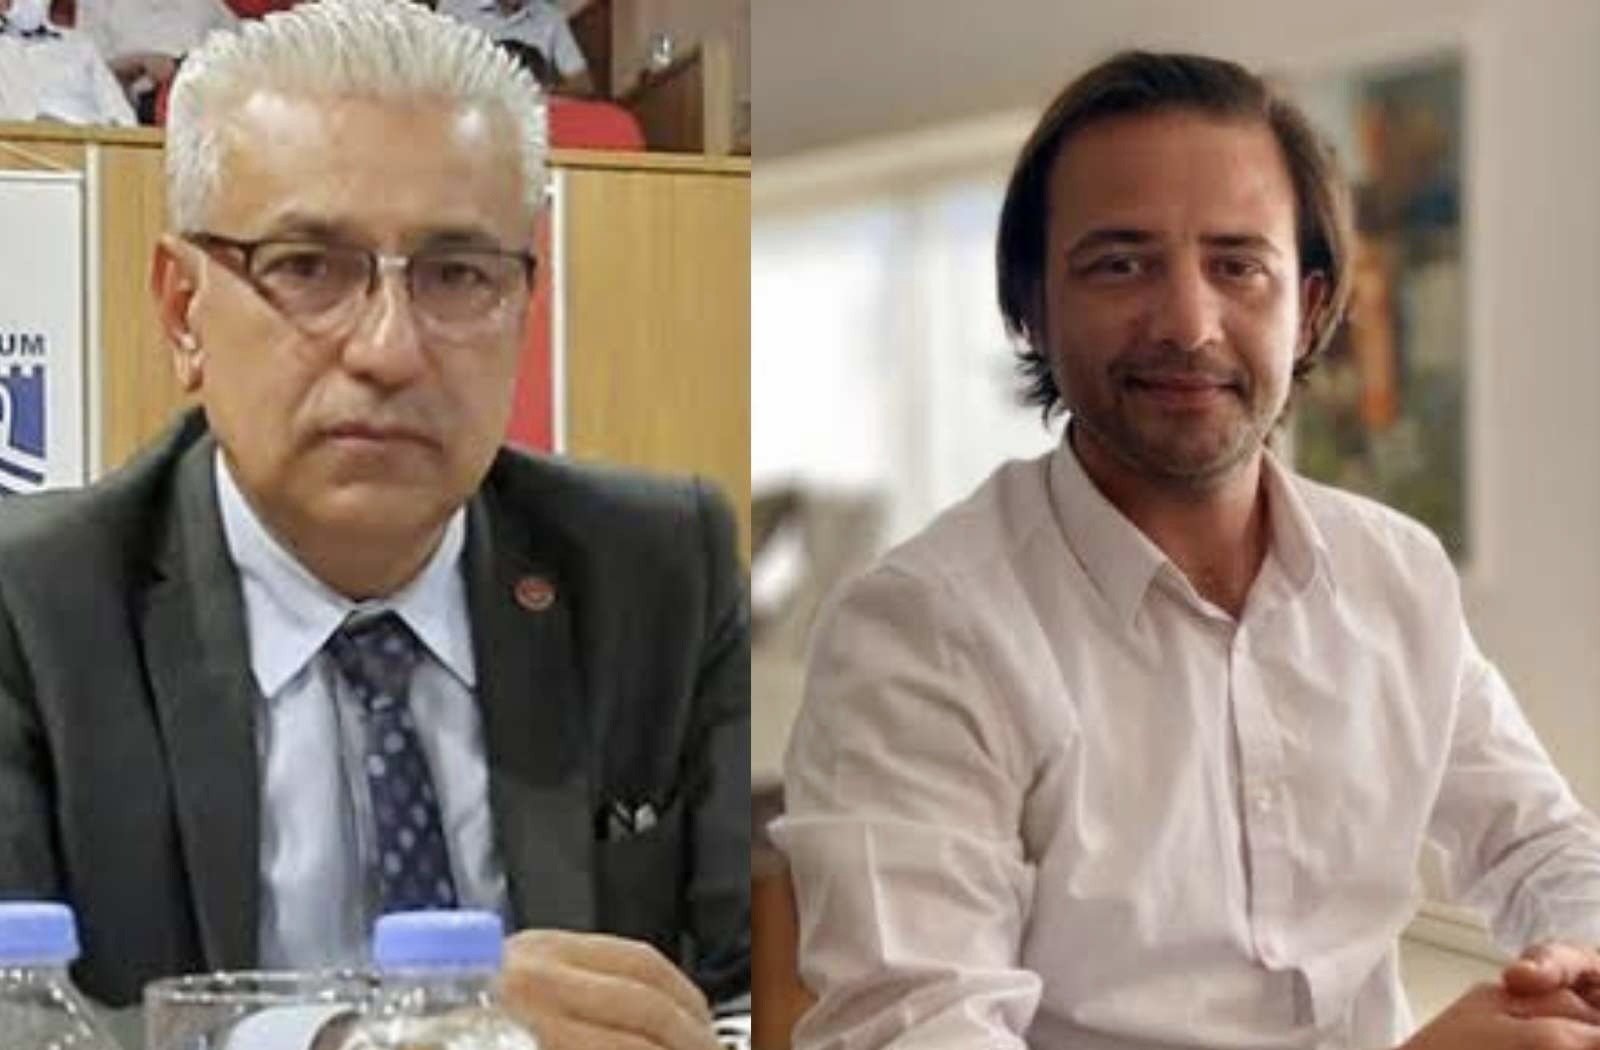  İyi Partili meclis üyeleri, istifaları sonrası Bağımsız üyeyken şimdi CHP’li oldu